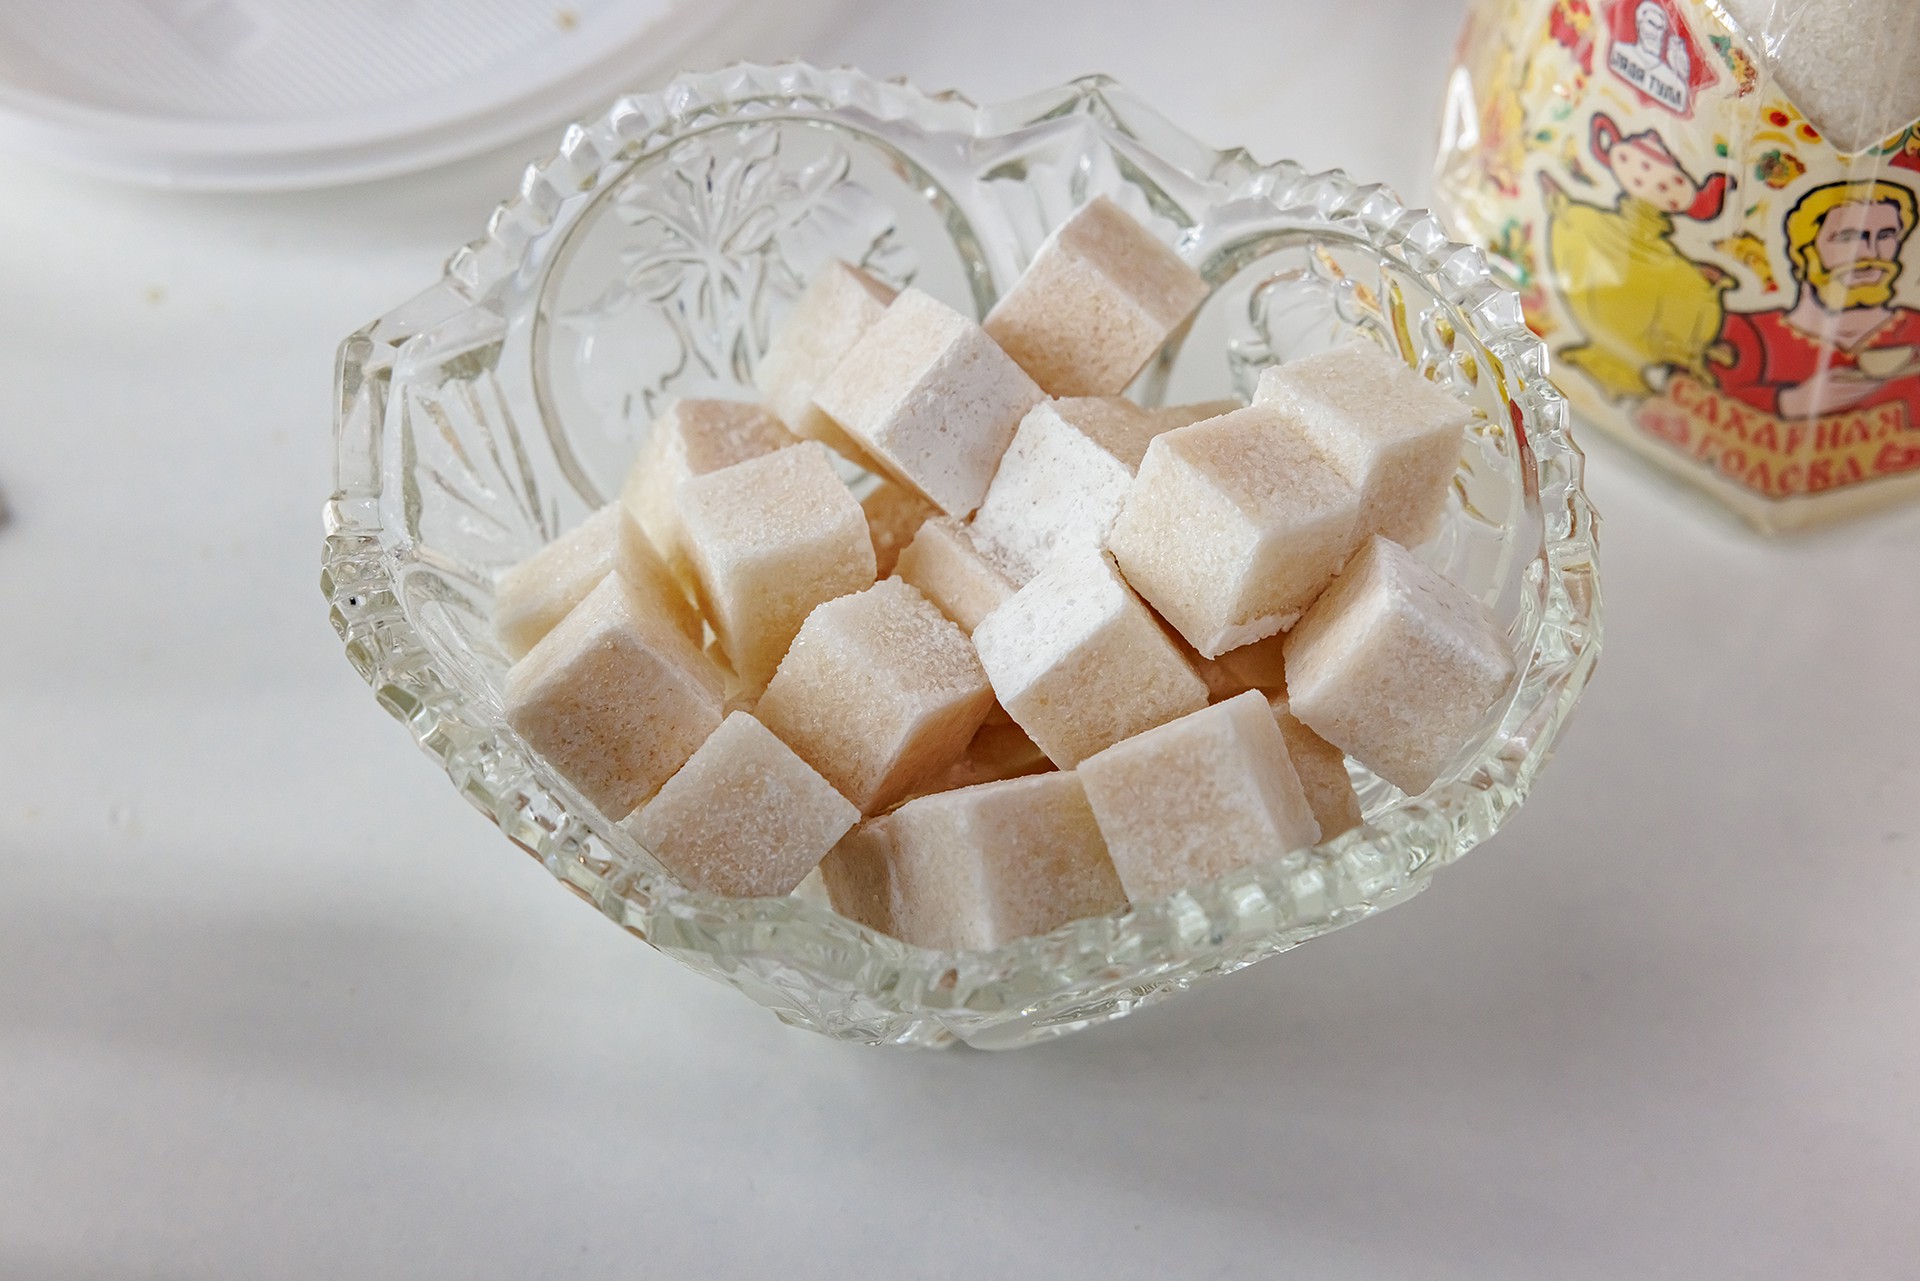 Эндокринолог рассказала, сколько сахара можно употреблять в день без вреда для организма